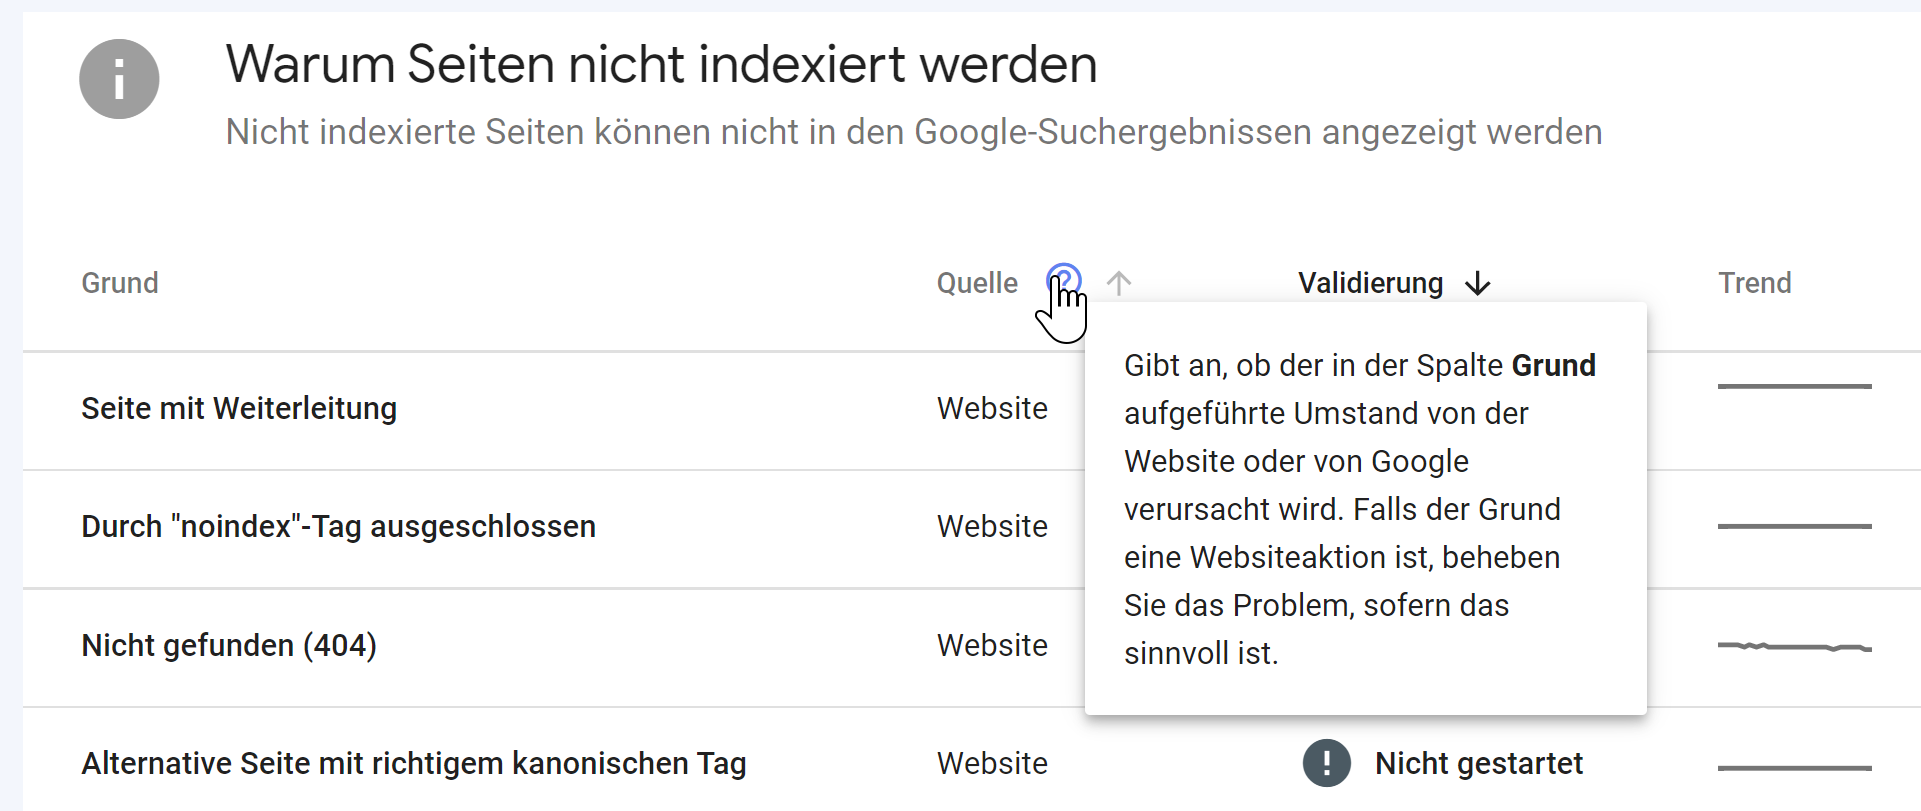 Neuer Index Coverage Report in der Google Search Console: Sortierung nach Quelle der Problemkategorie